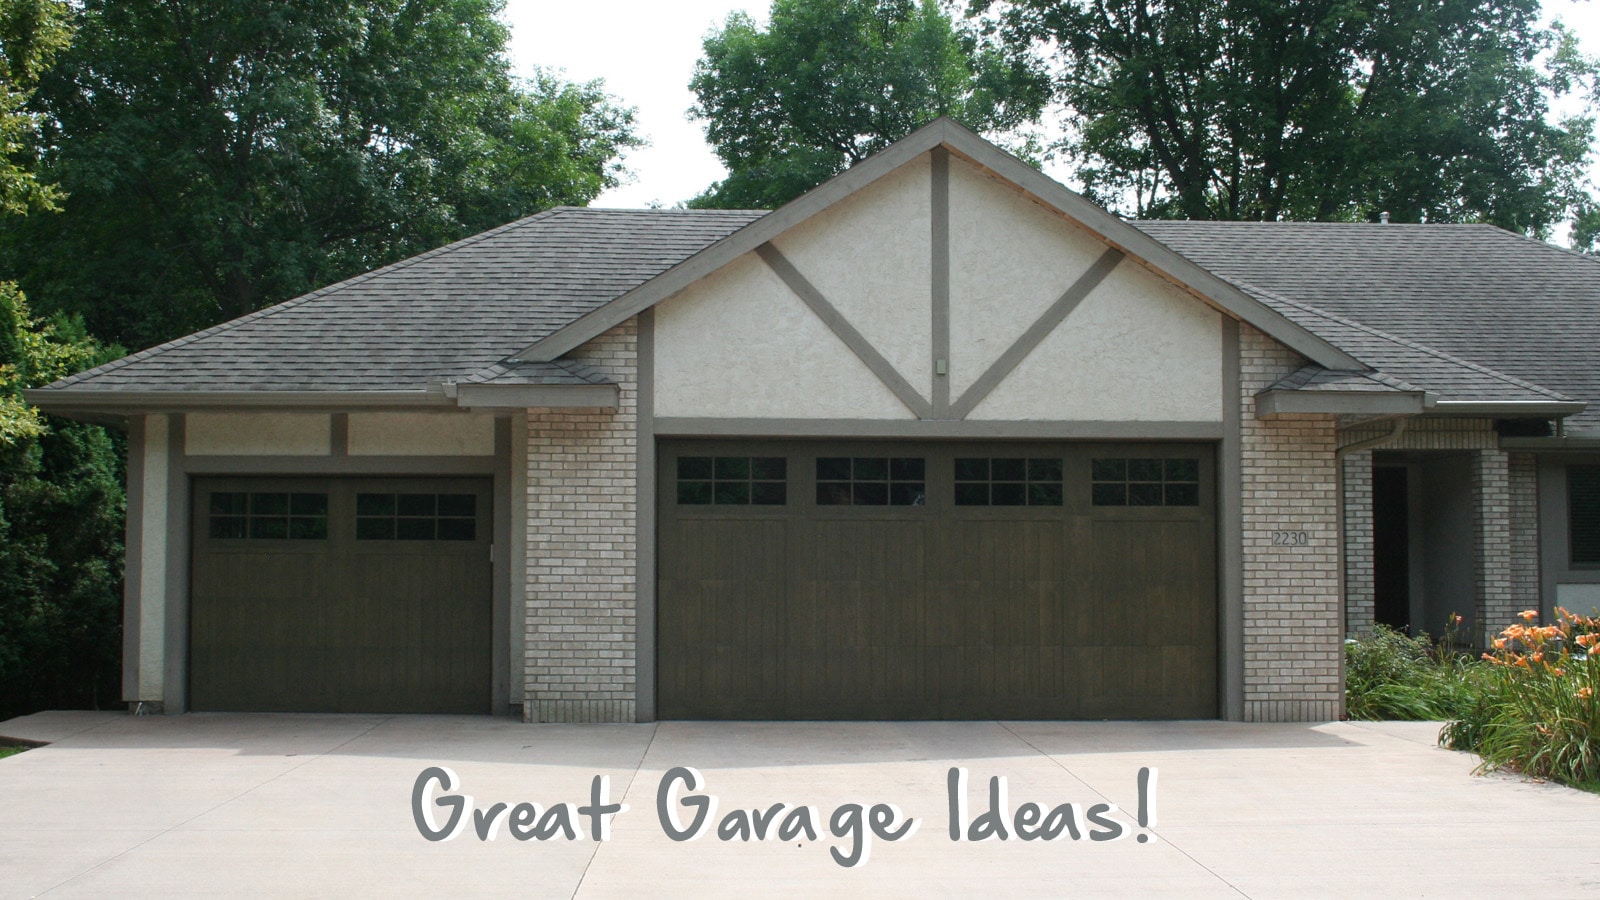 Great Garage Ideas!